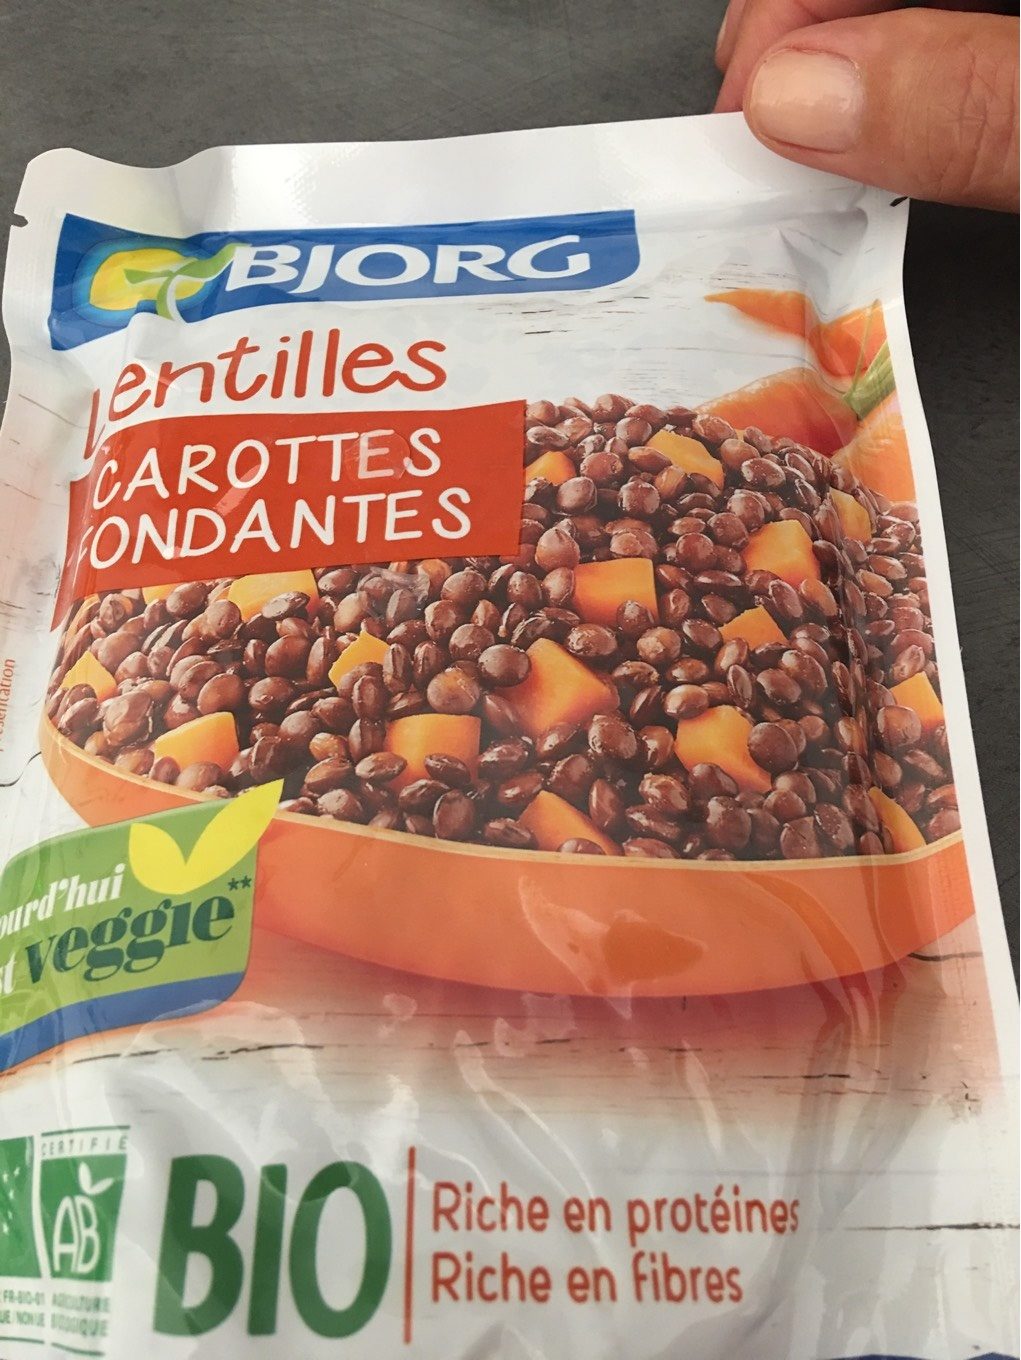 Lentille carotte doy pack bjorg - Produit